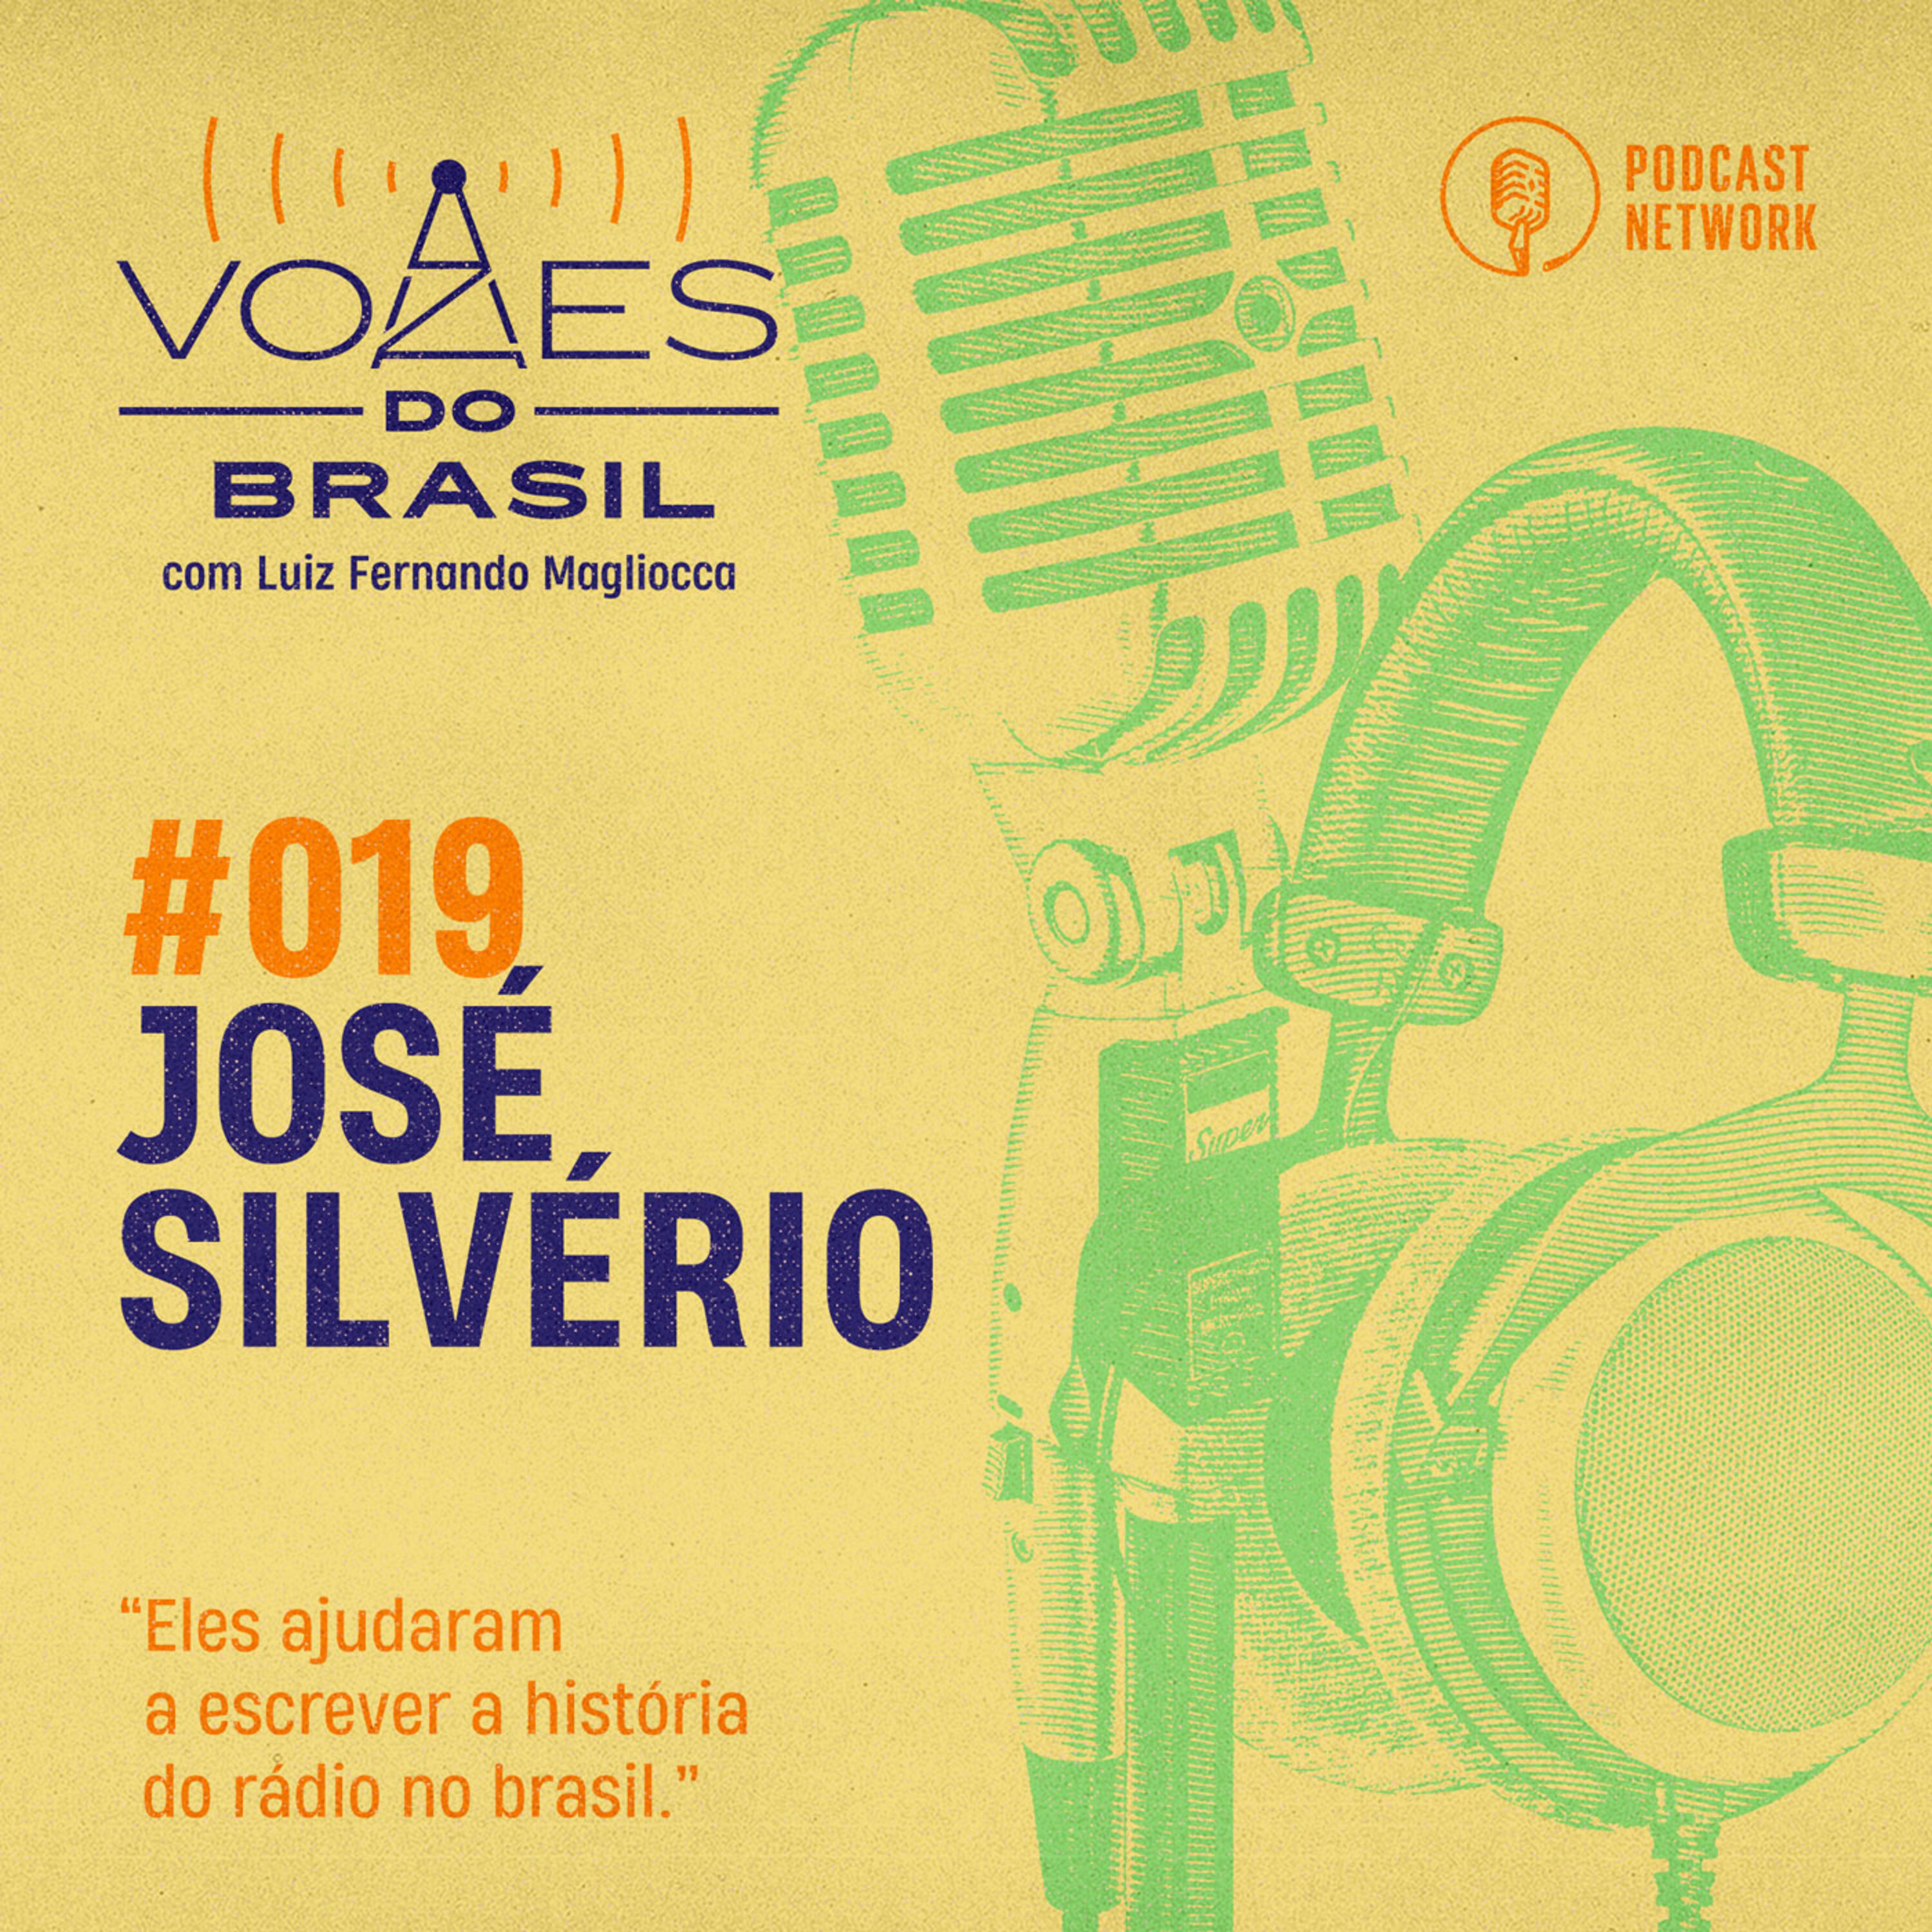 Vozes do Brasil 019 - José Silvério